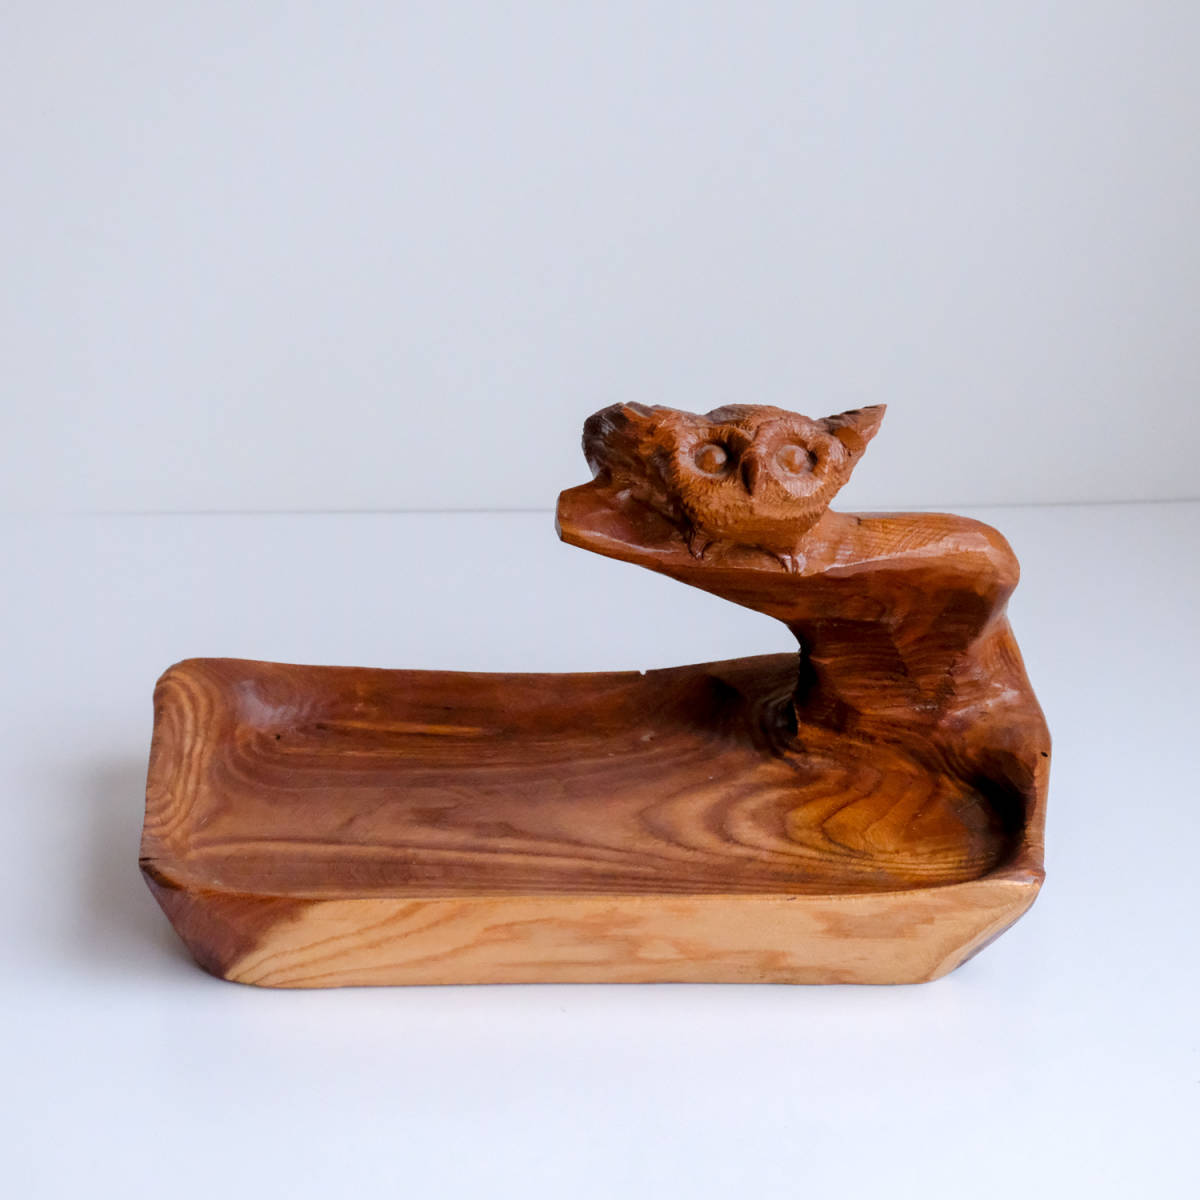 梟が彫られた木皿 北海道民芸品 置物 彫刻 木製彫刻 フクロウ 幅約31cm 高さ約19cm_画像4